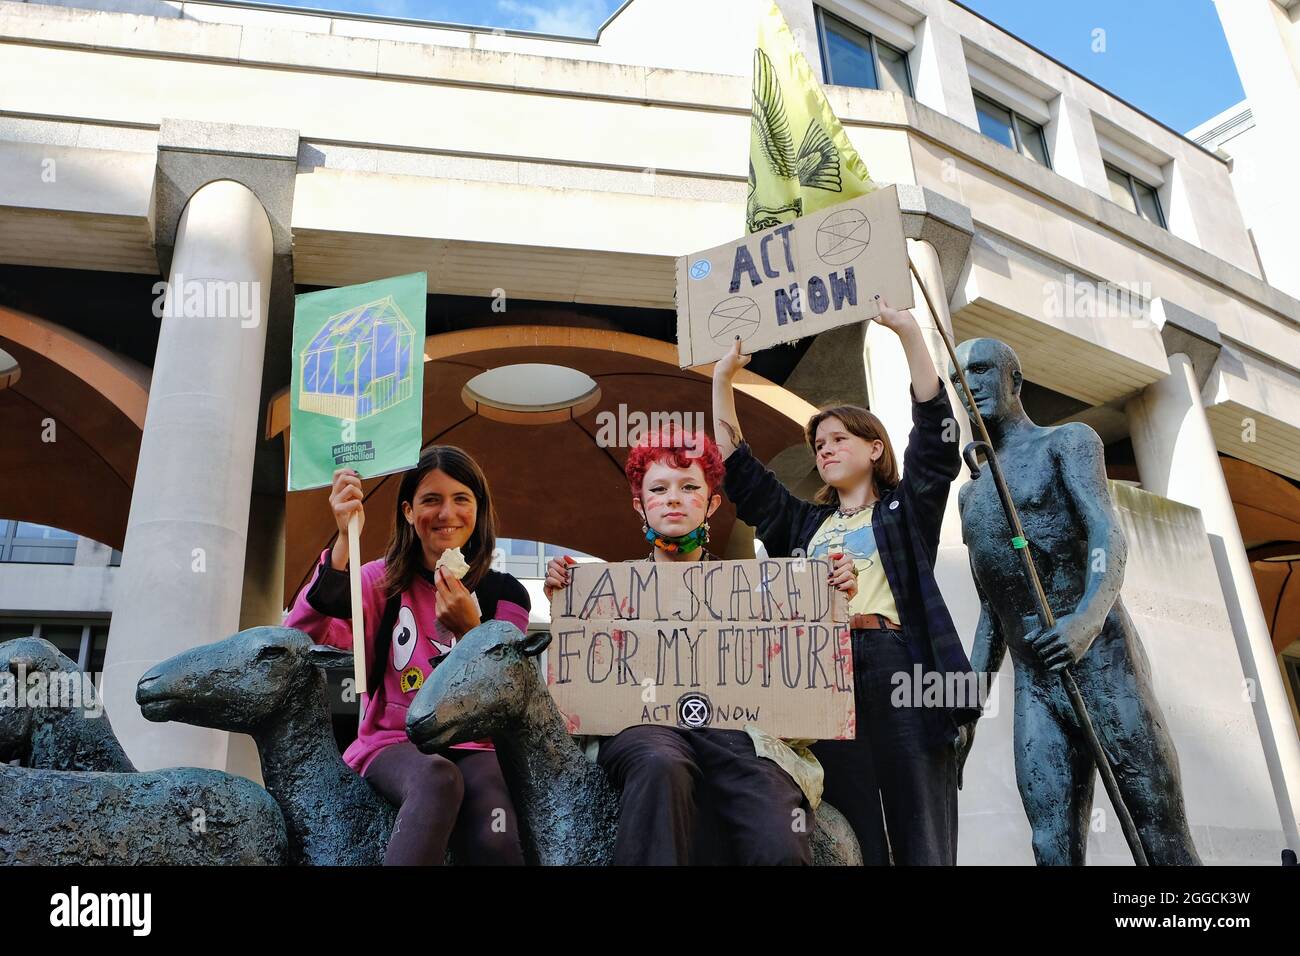 Londres, Royaume-Uni. De jeunes manifestants tiennent des pancartes, l'un d'entre eux disant « Je suis effrayé pour mon avenir » lors d'une manifestation de la rébellion dans la City de Londres. Banque D'Images